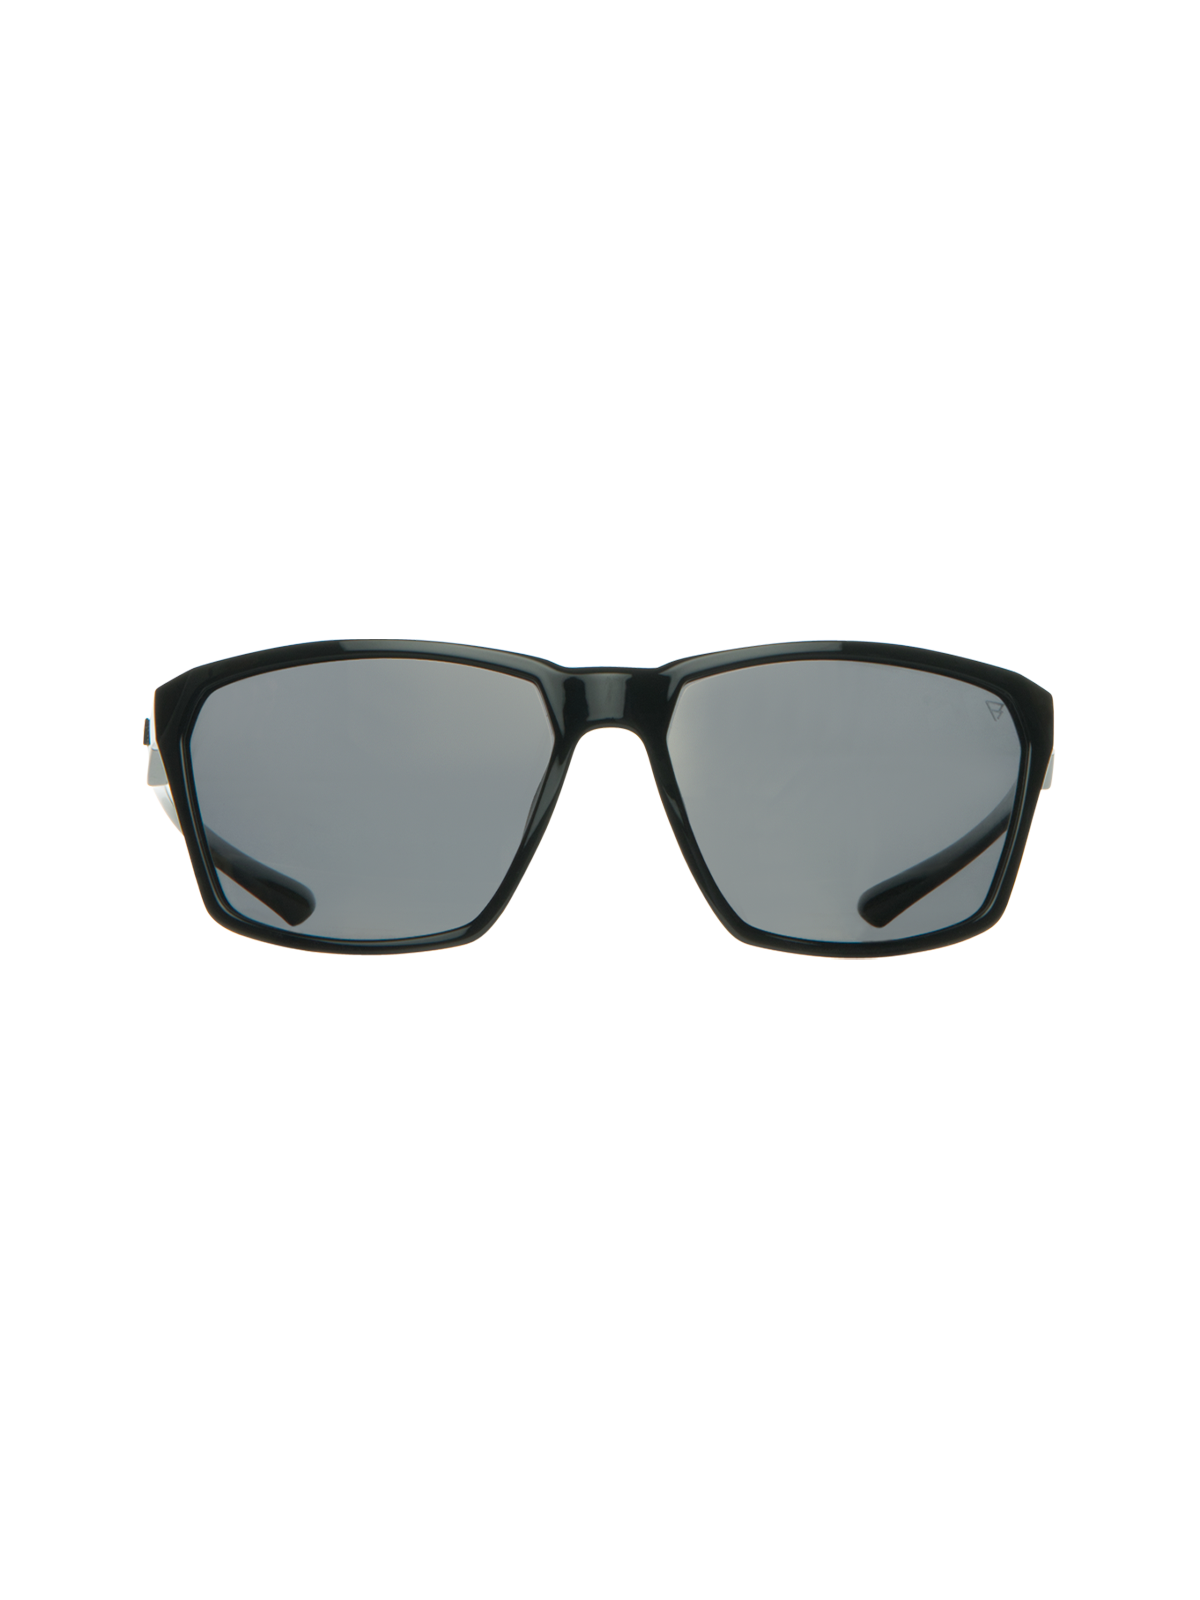 Cosmos Sunglasses | Black